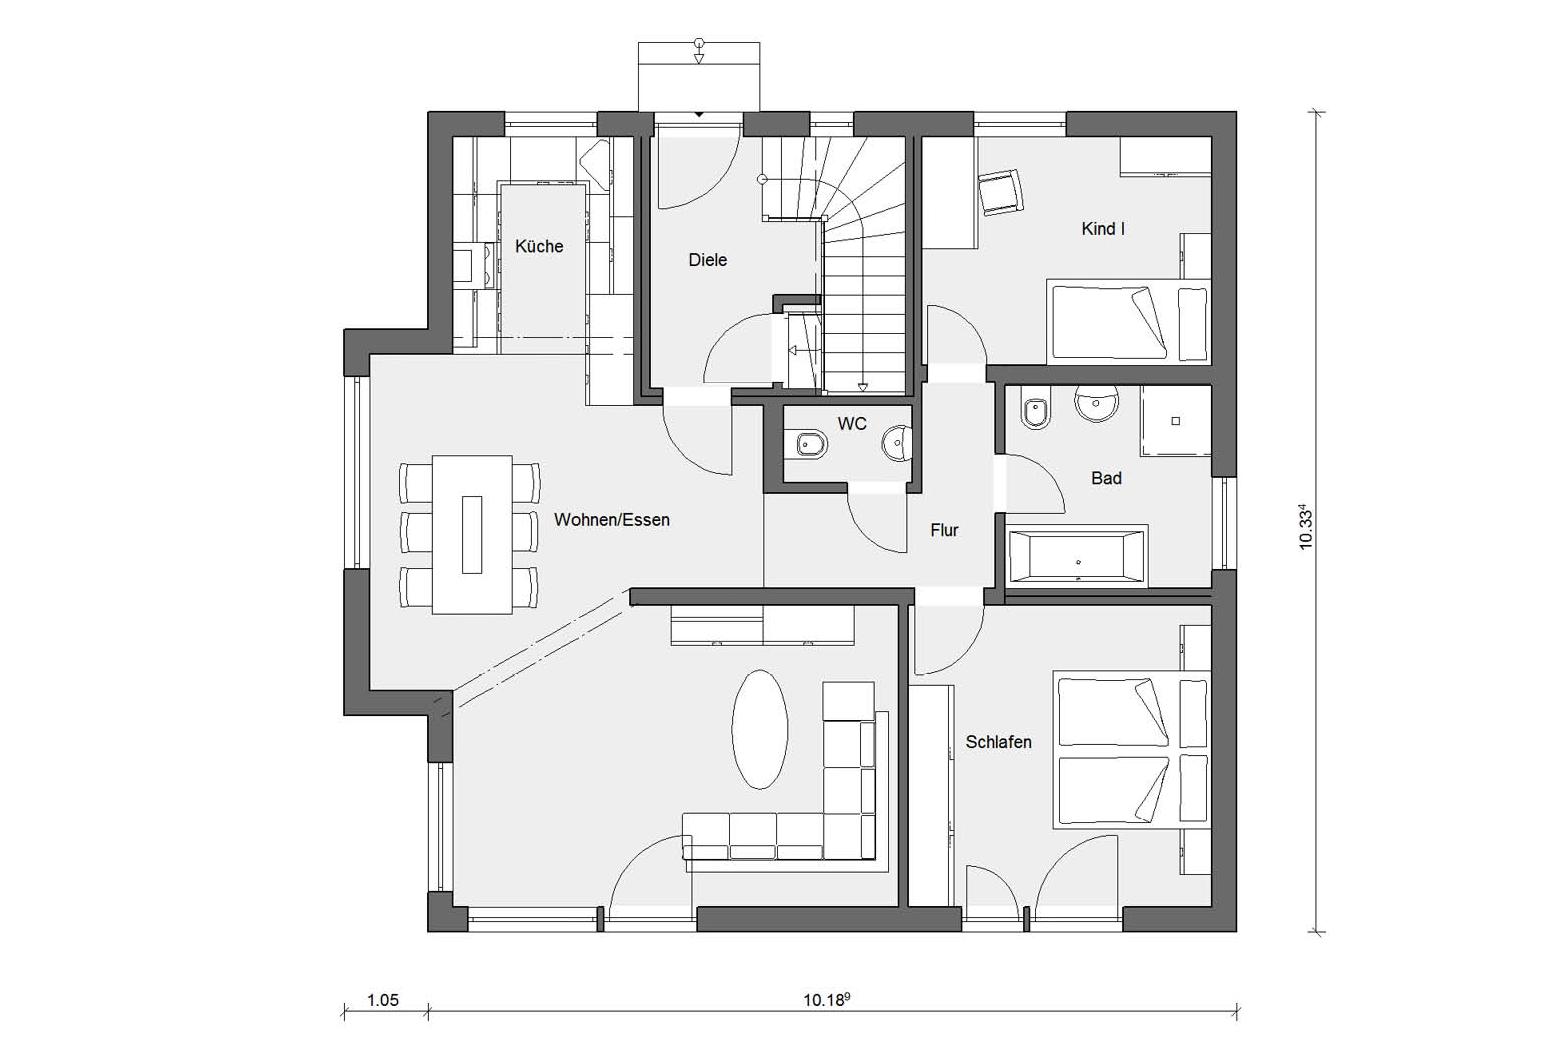 Plan d'étage rez-de-chaussée M 15-179.2 Maison individuelle avec studio